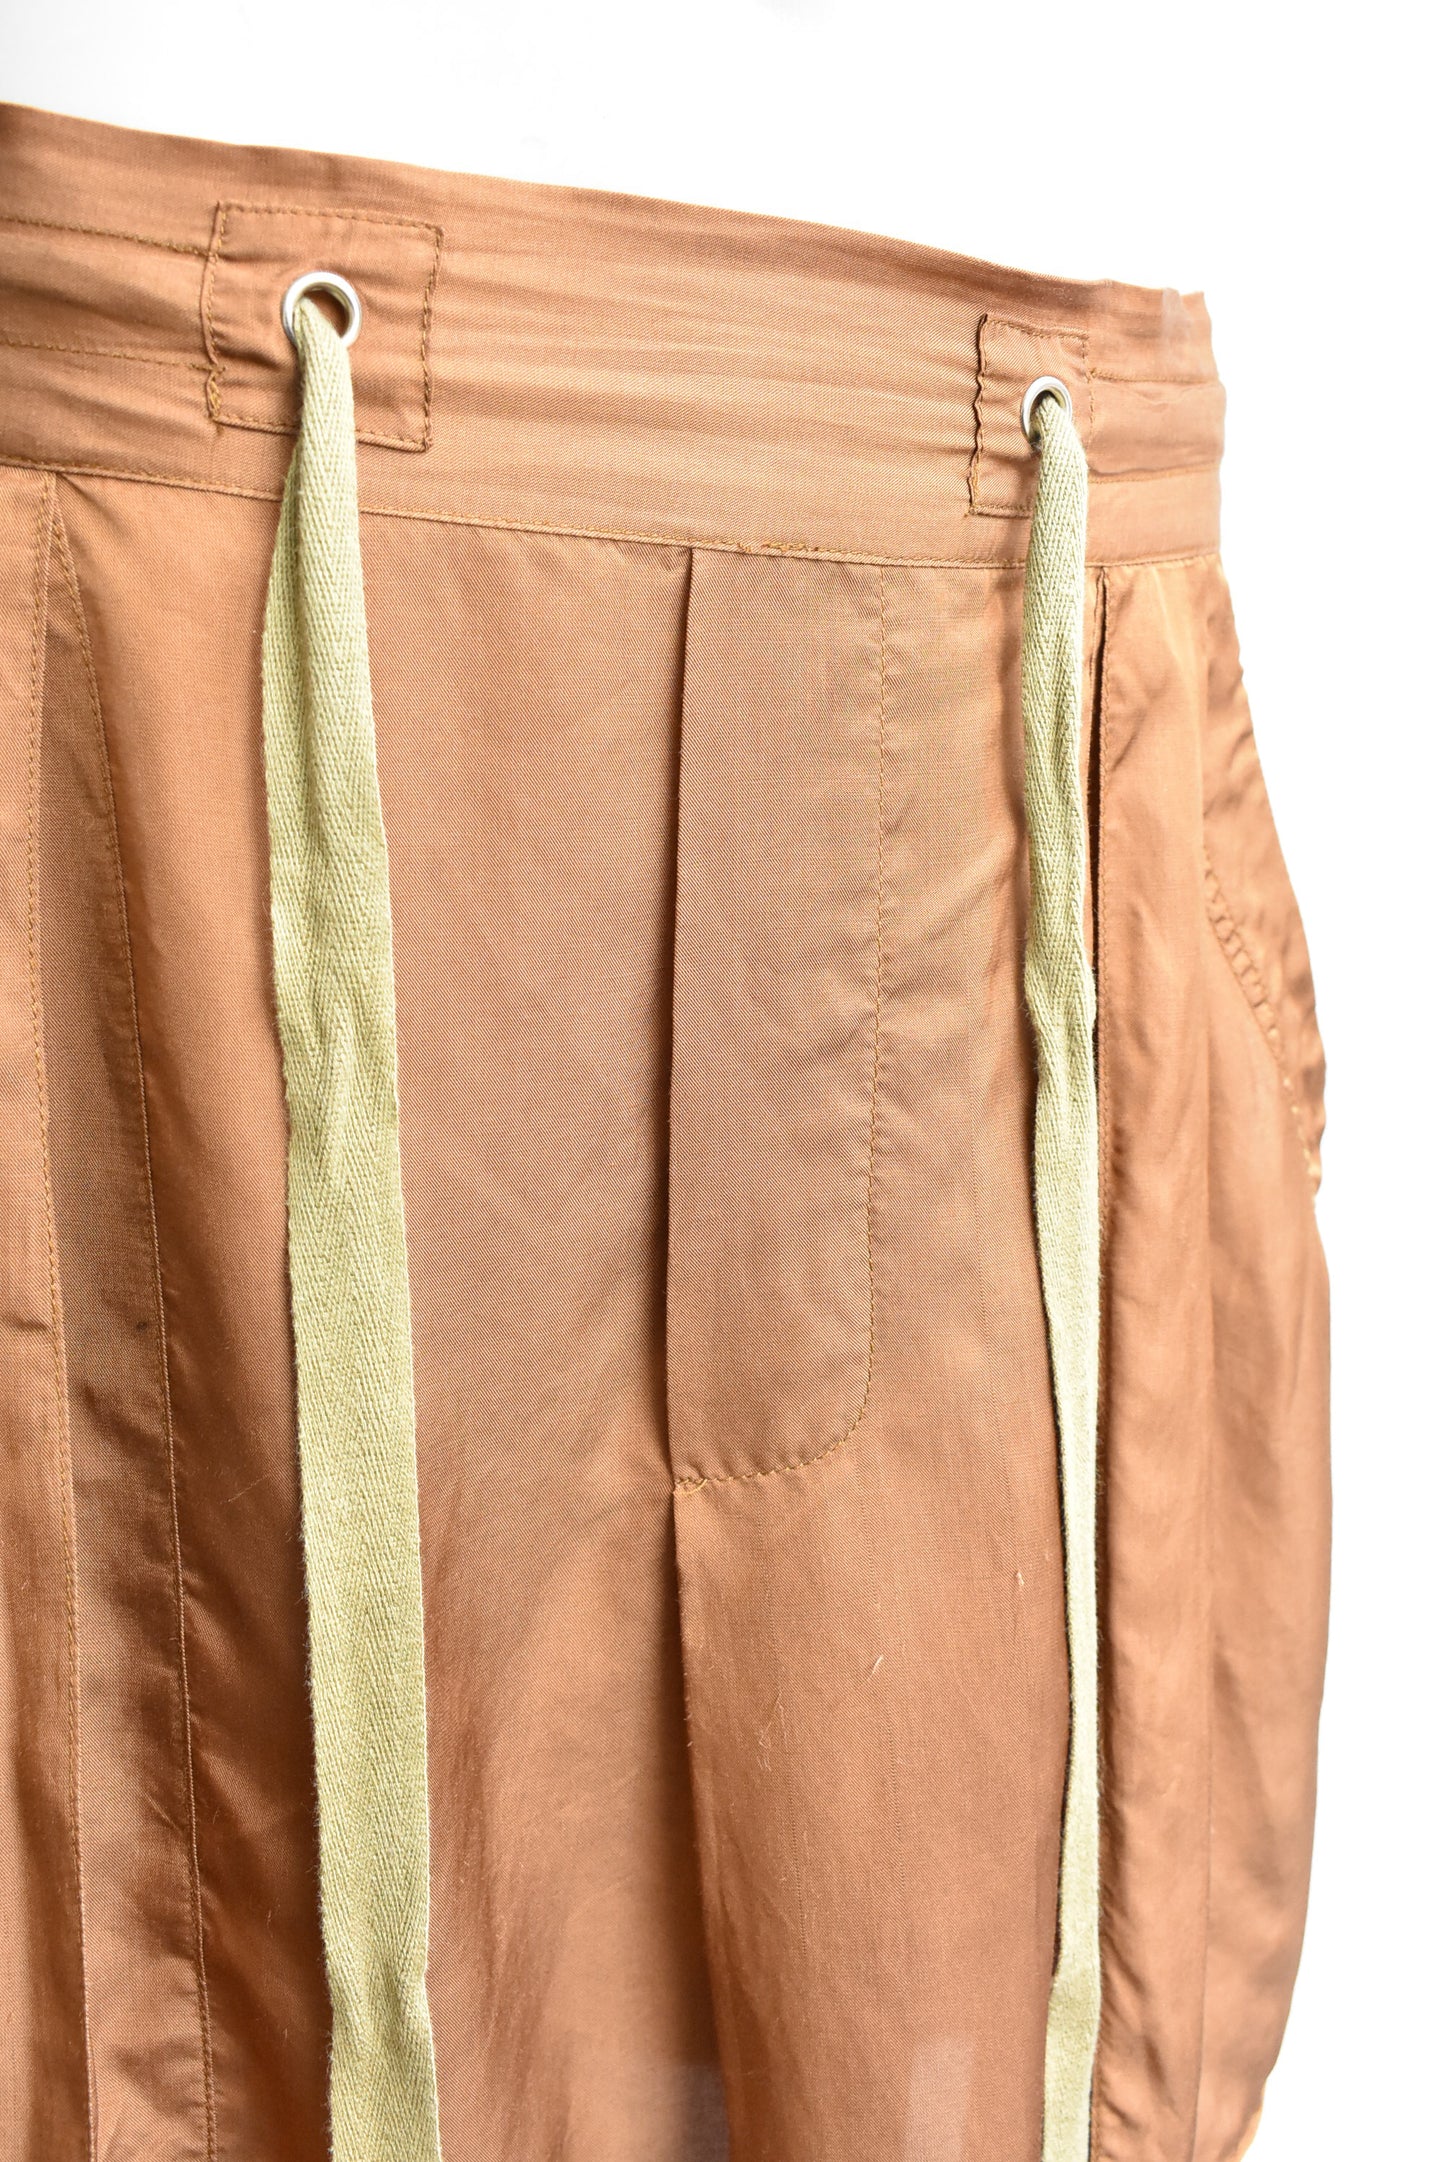 Lee Mathews 100% silk skirt, size S